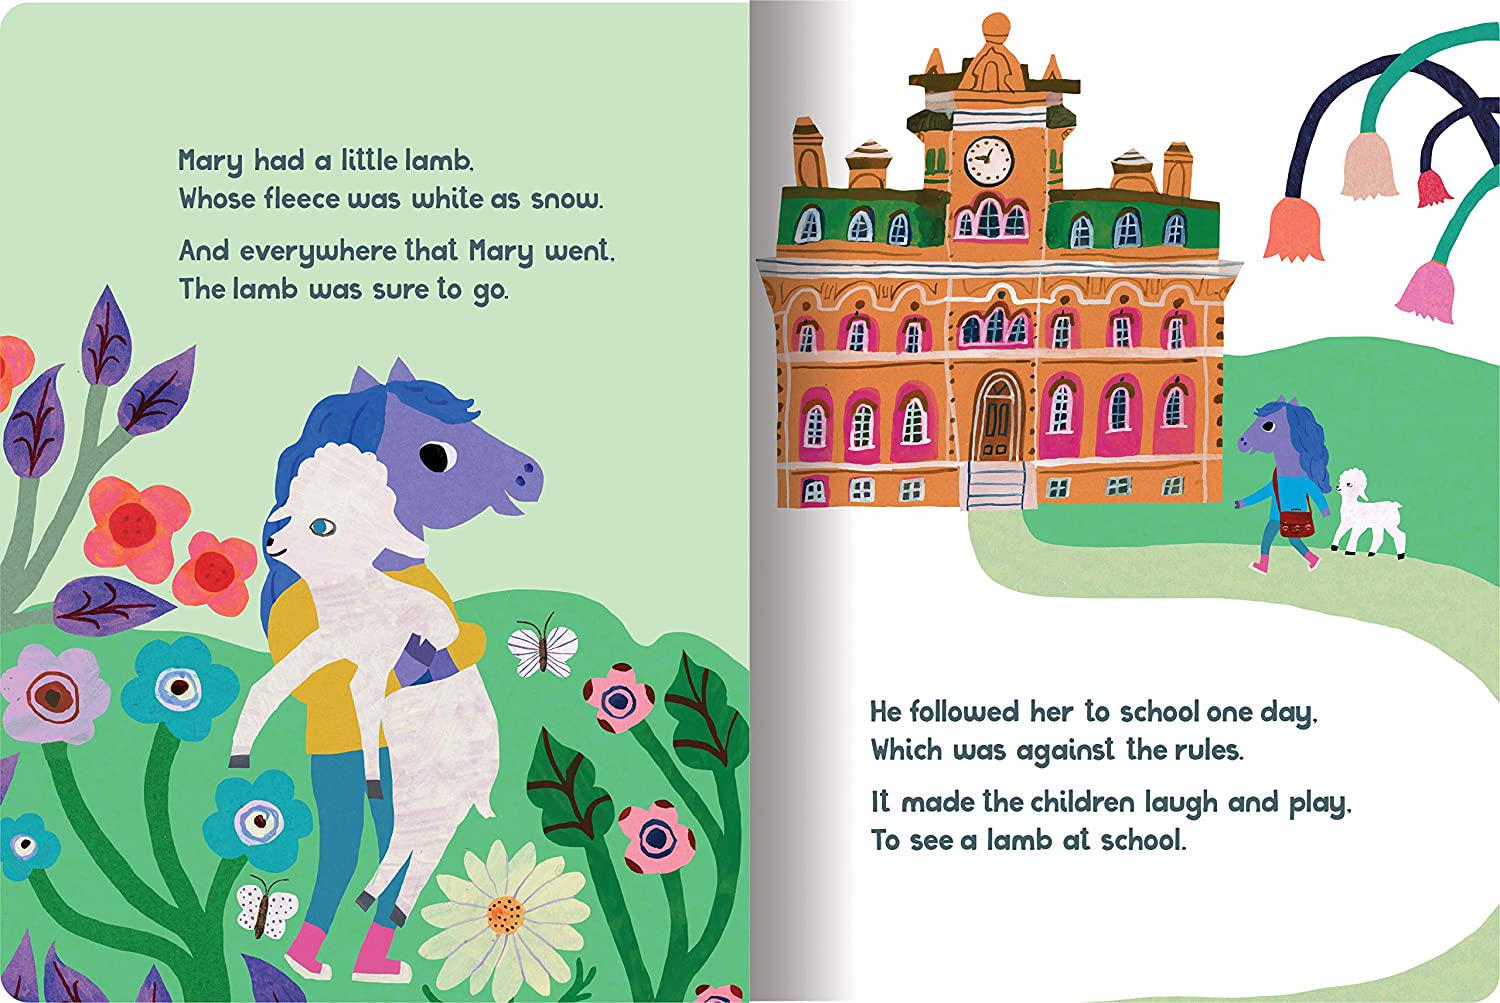 eeBoo, eeBoo's Nursery Rhymes for Little Ones Board Book